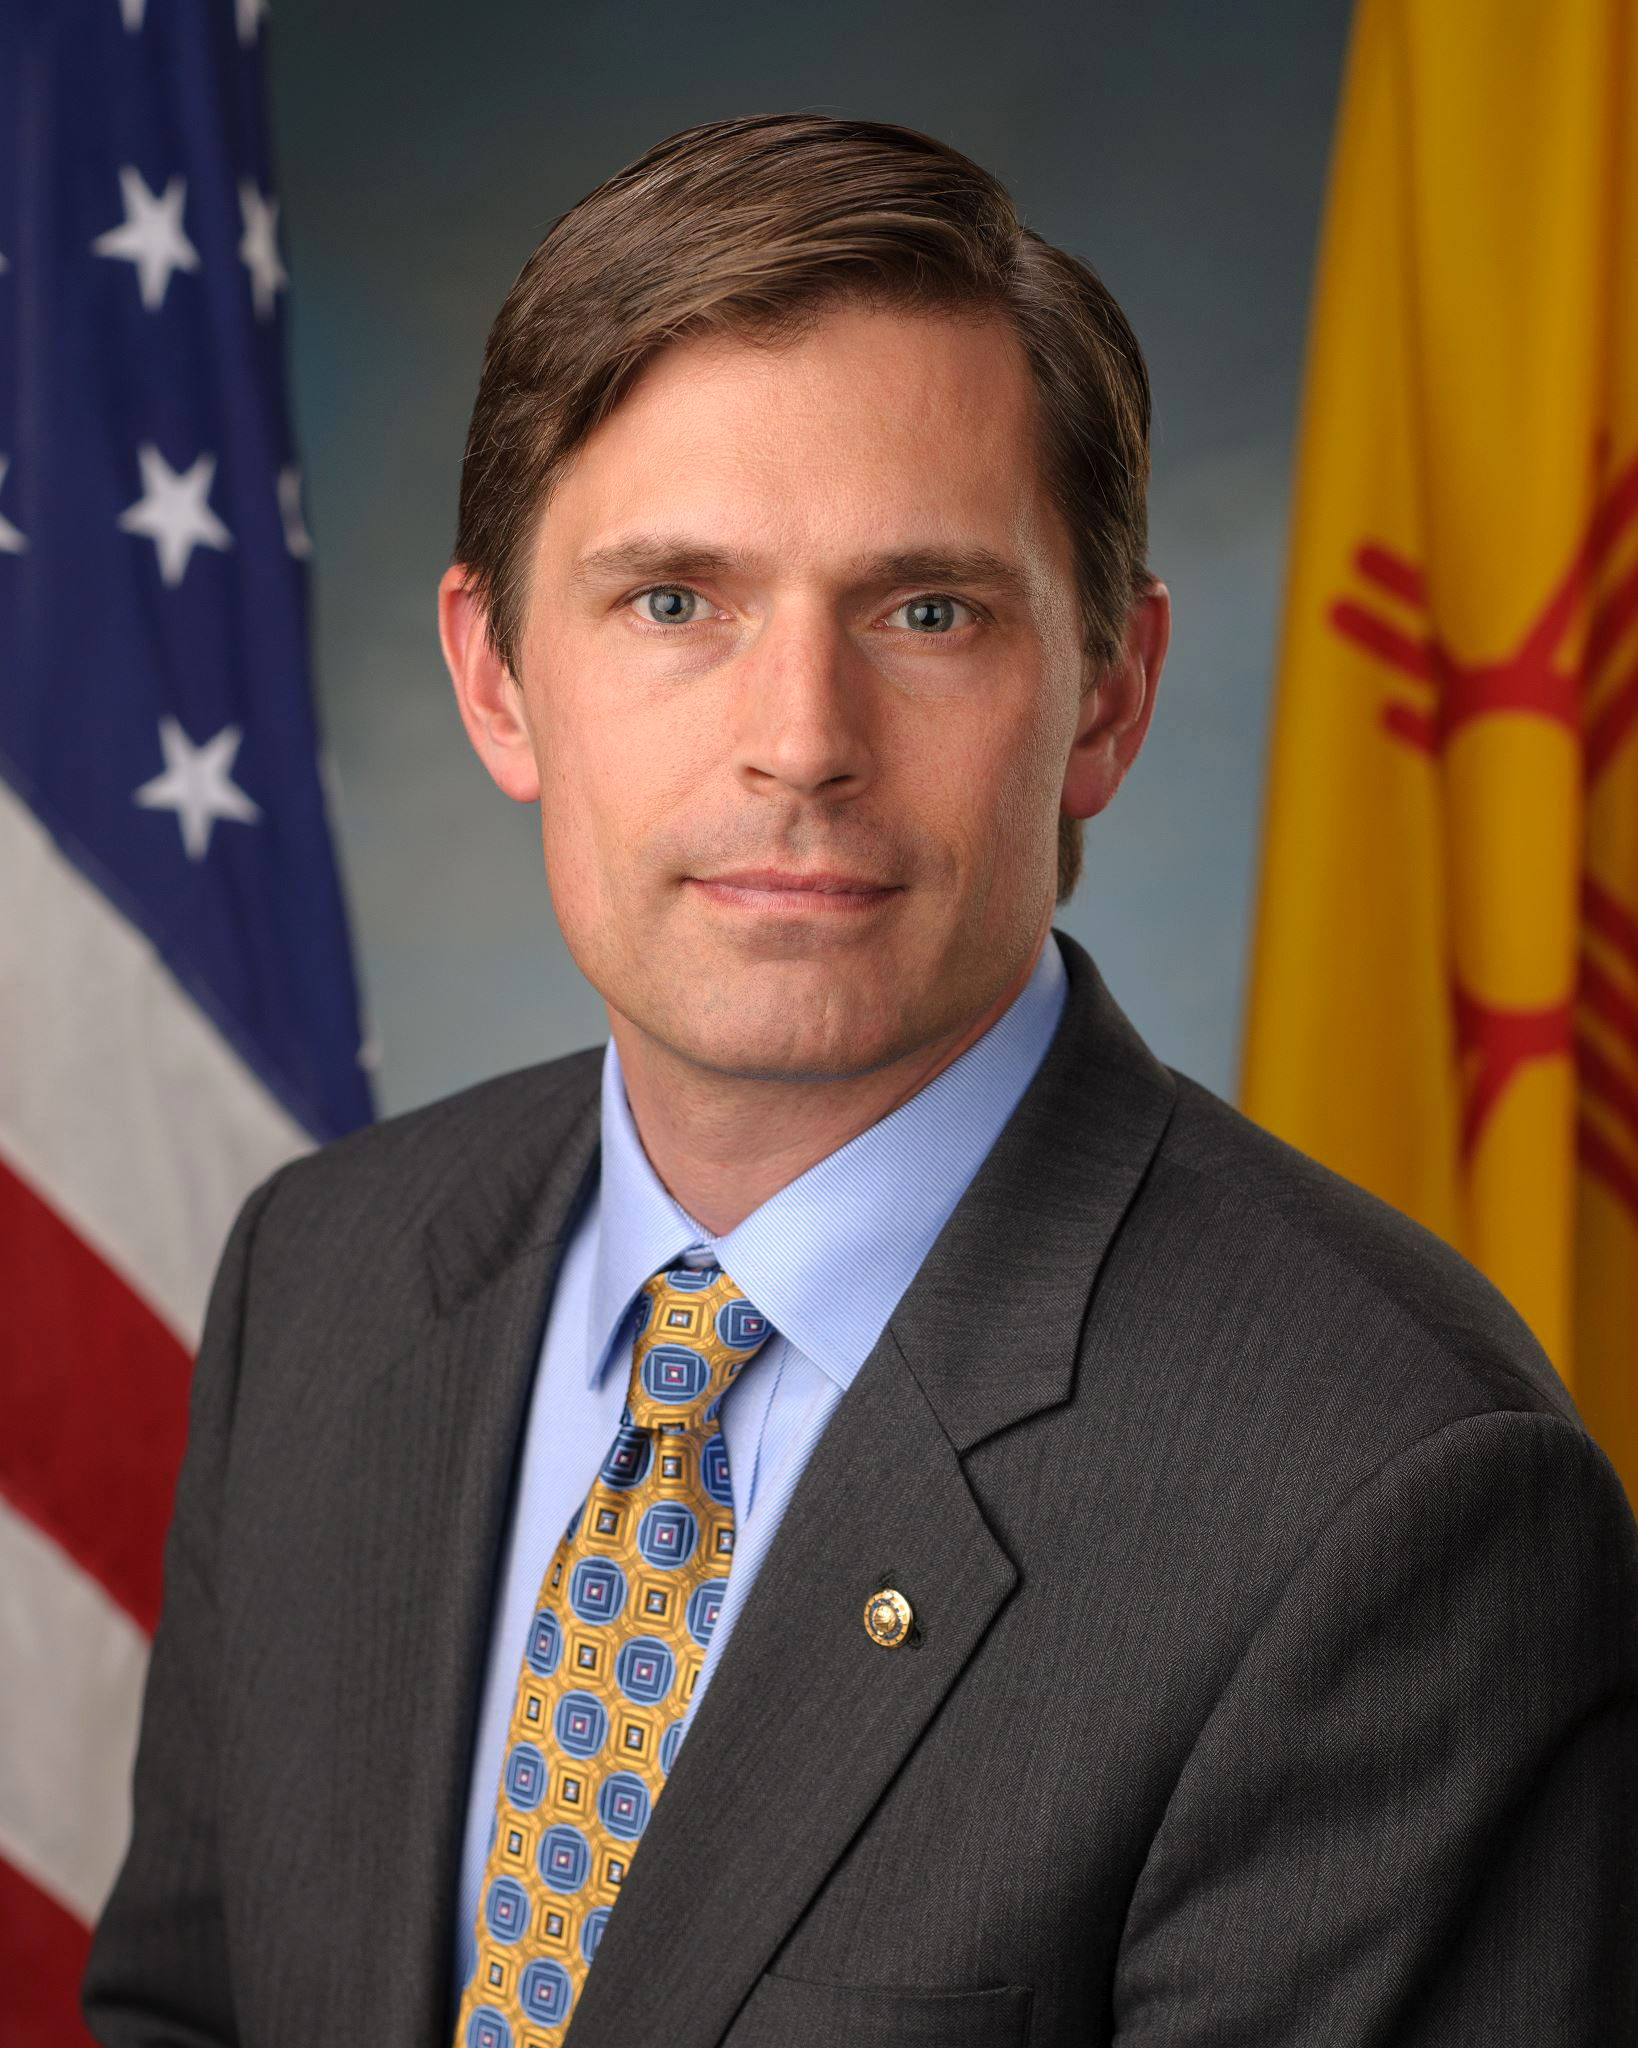 Senator Martin Heinrich of New Mexico